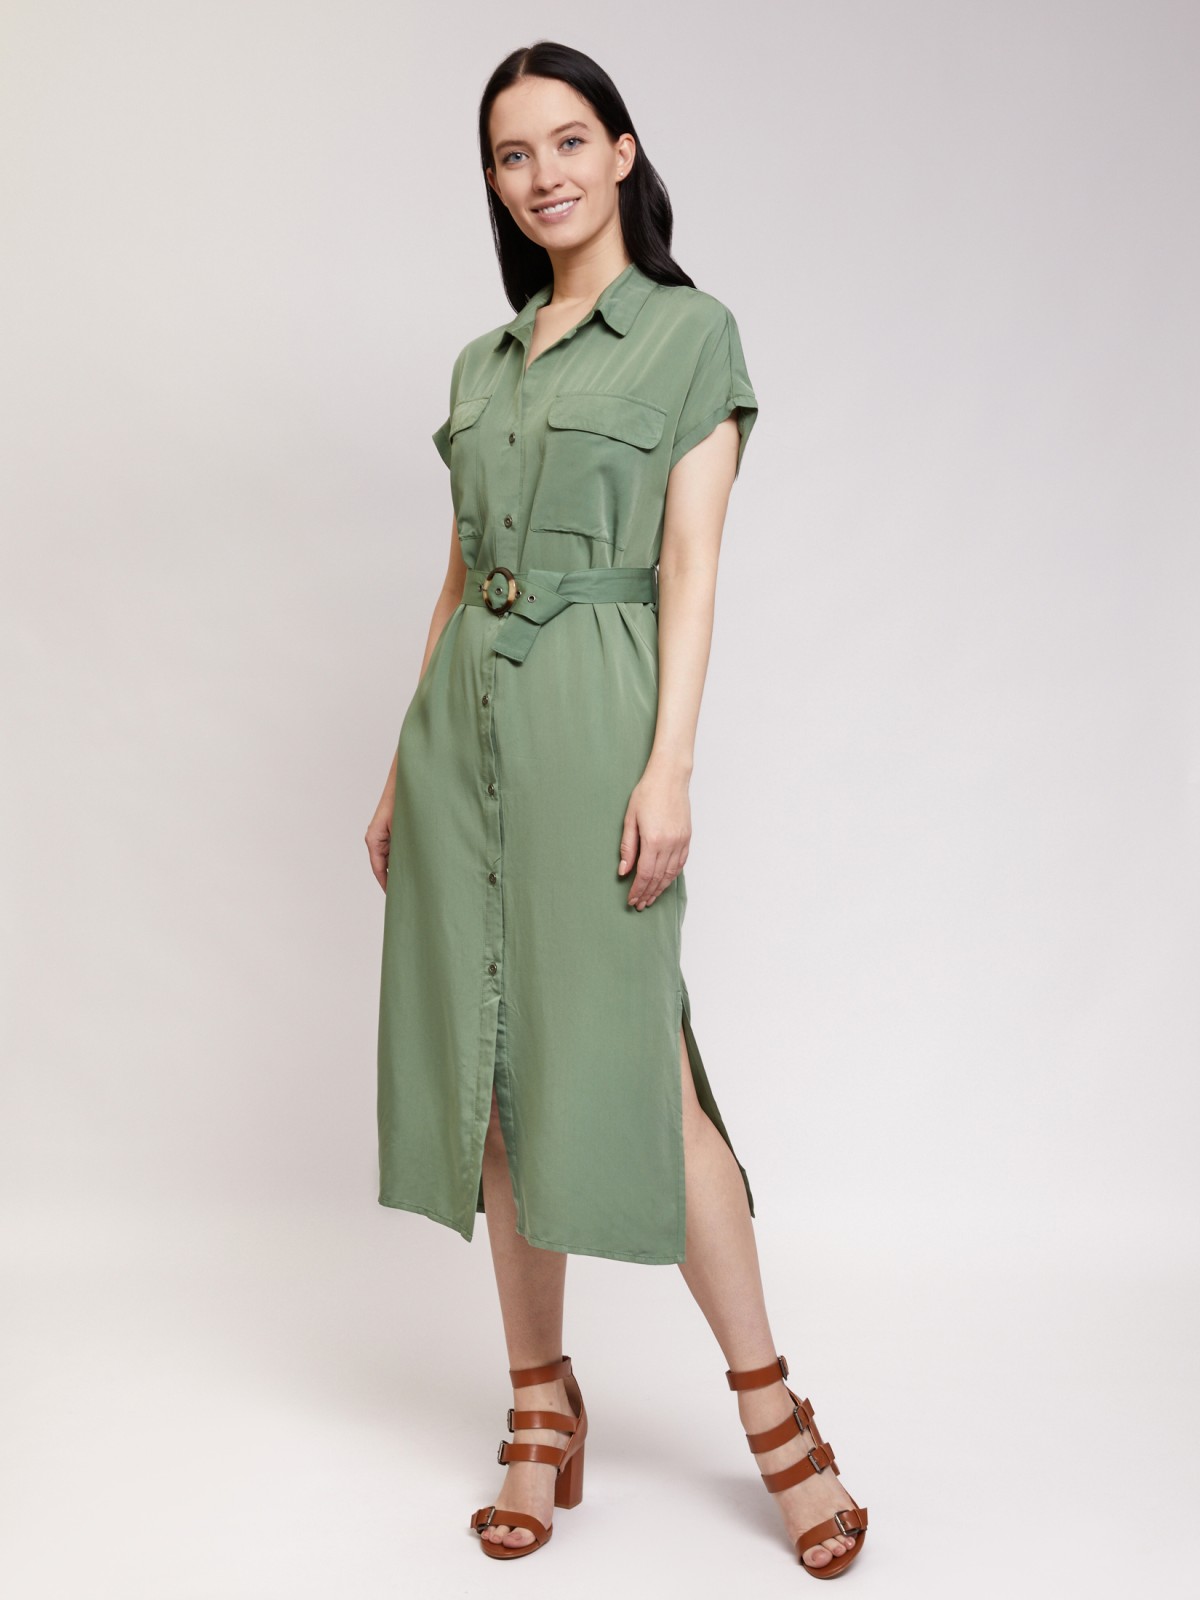 Платье-рубашка zolla 021258239013, цвет темно-зеленый, размер S